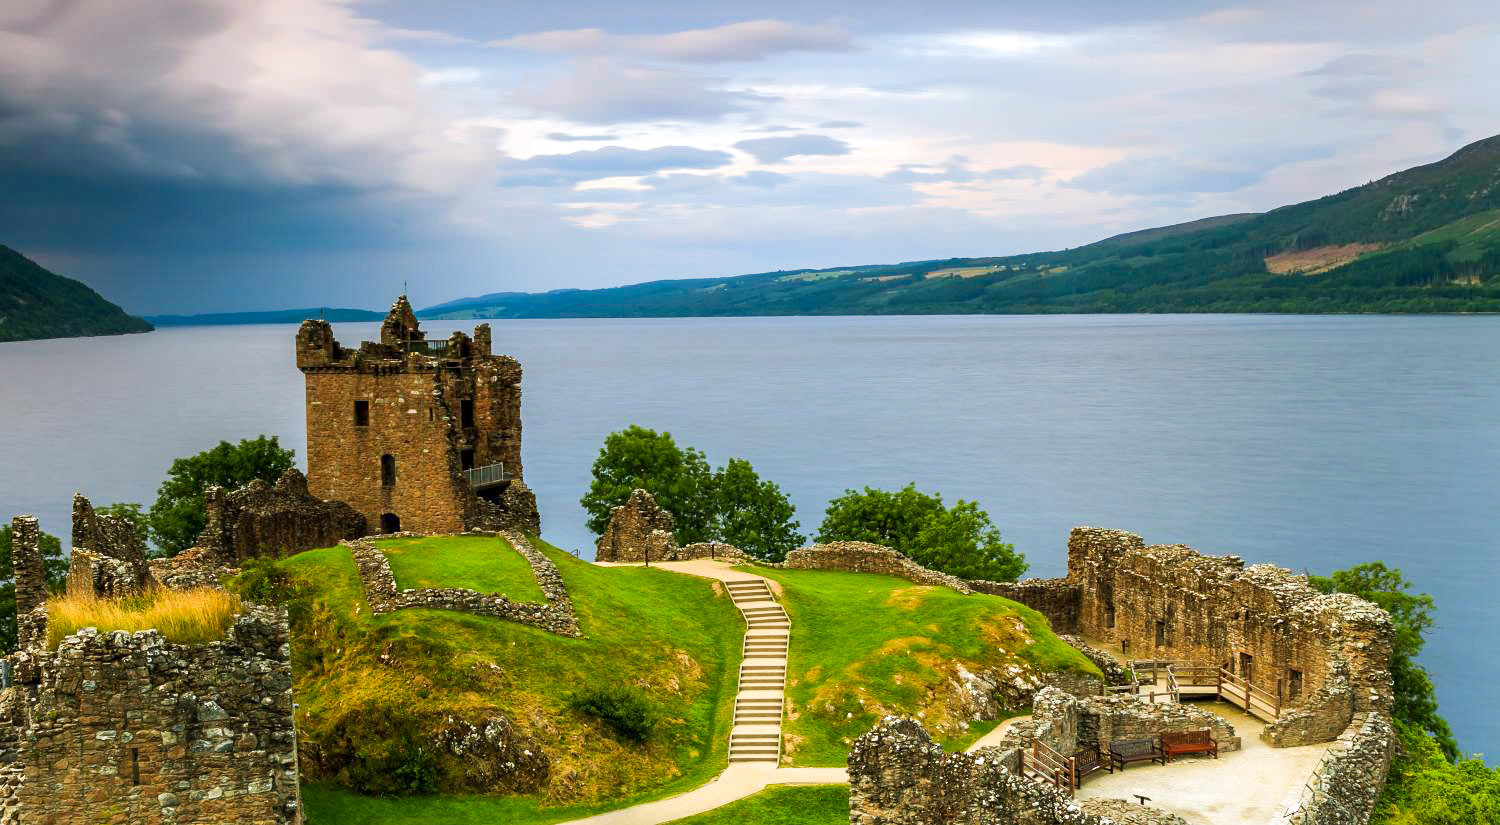 Voyage en Écosse : Explorer la beauté des Highlands écossais